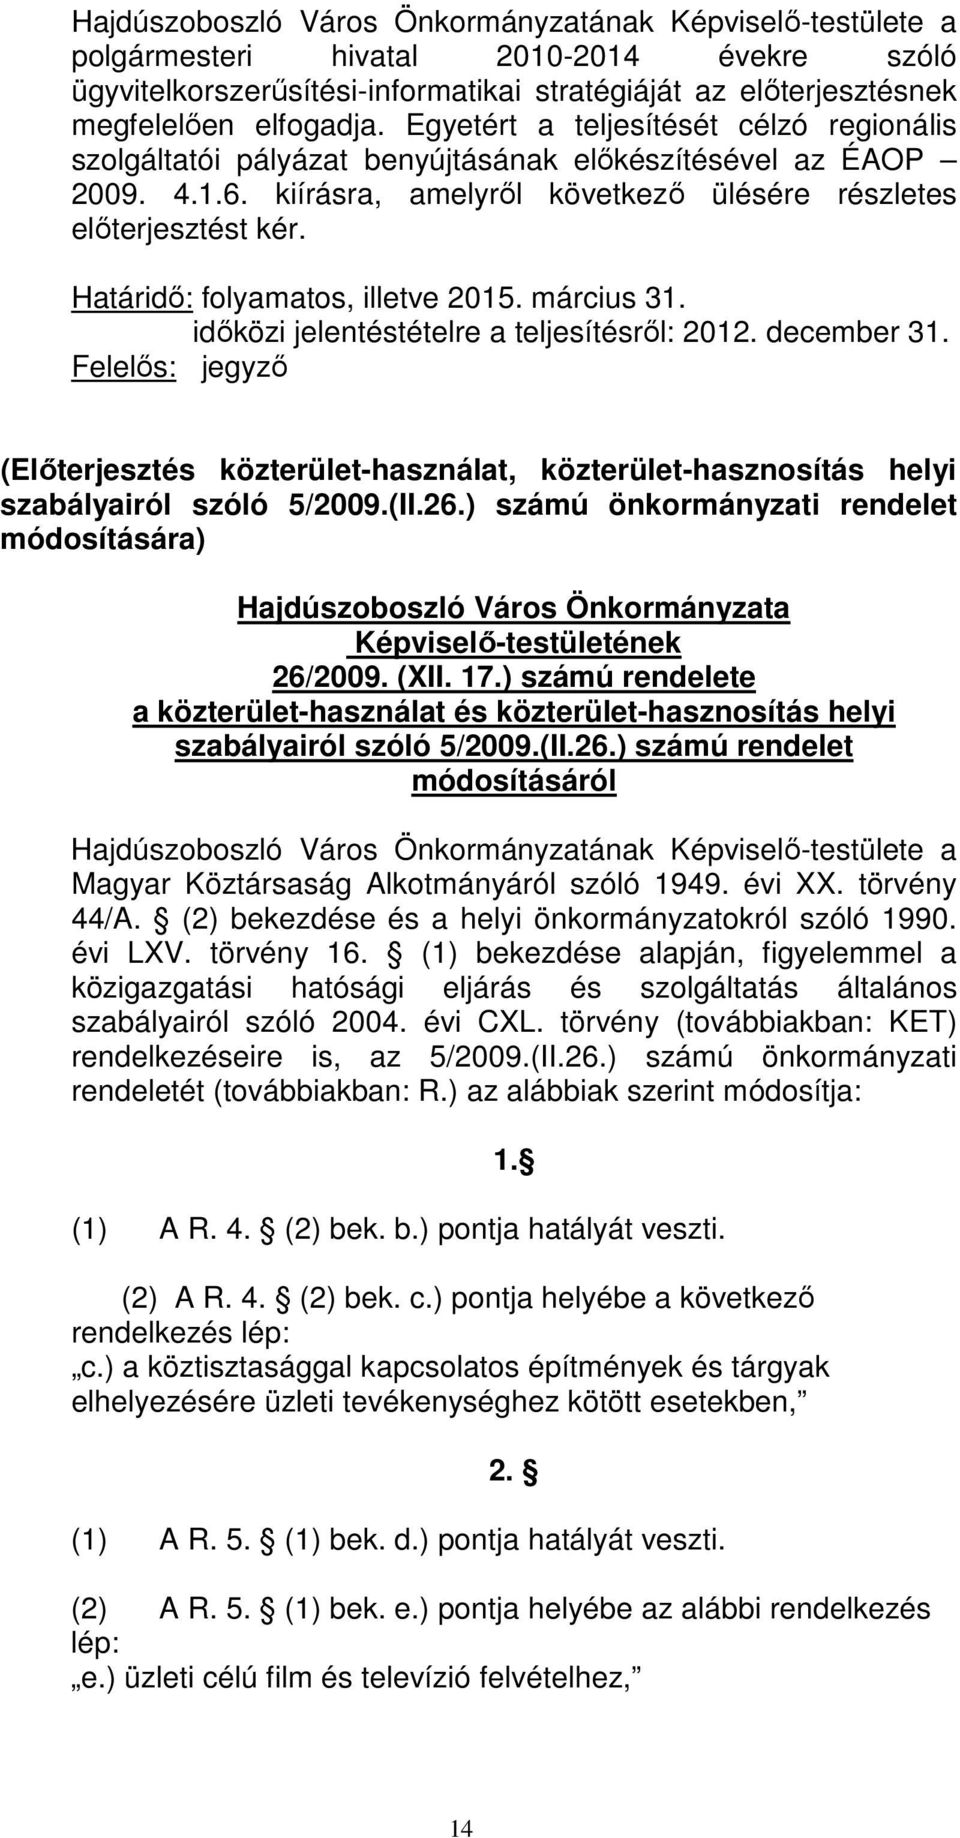 Határidı: folyamatos, illetve 2015. március 31. idıközi jelentéstételre a teljesítésrıl: 2012. december 31.